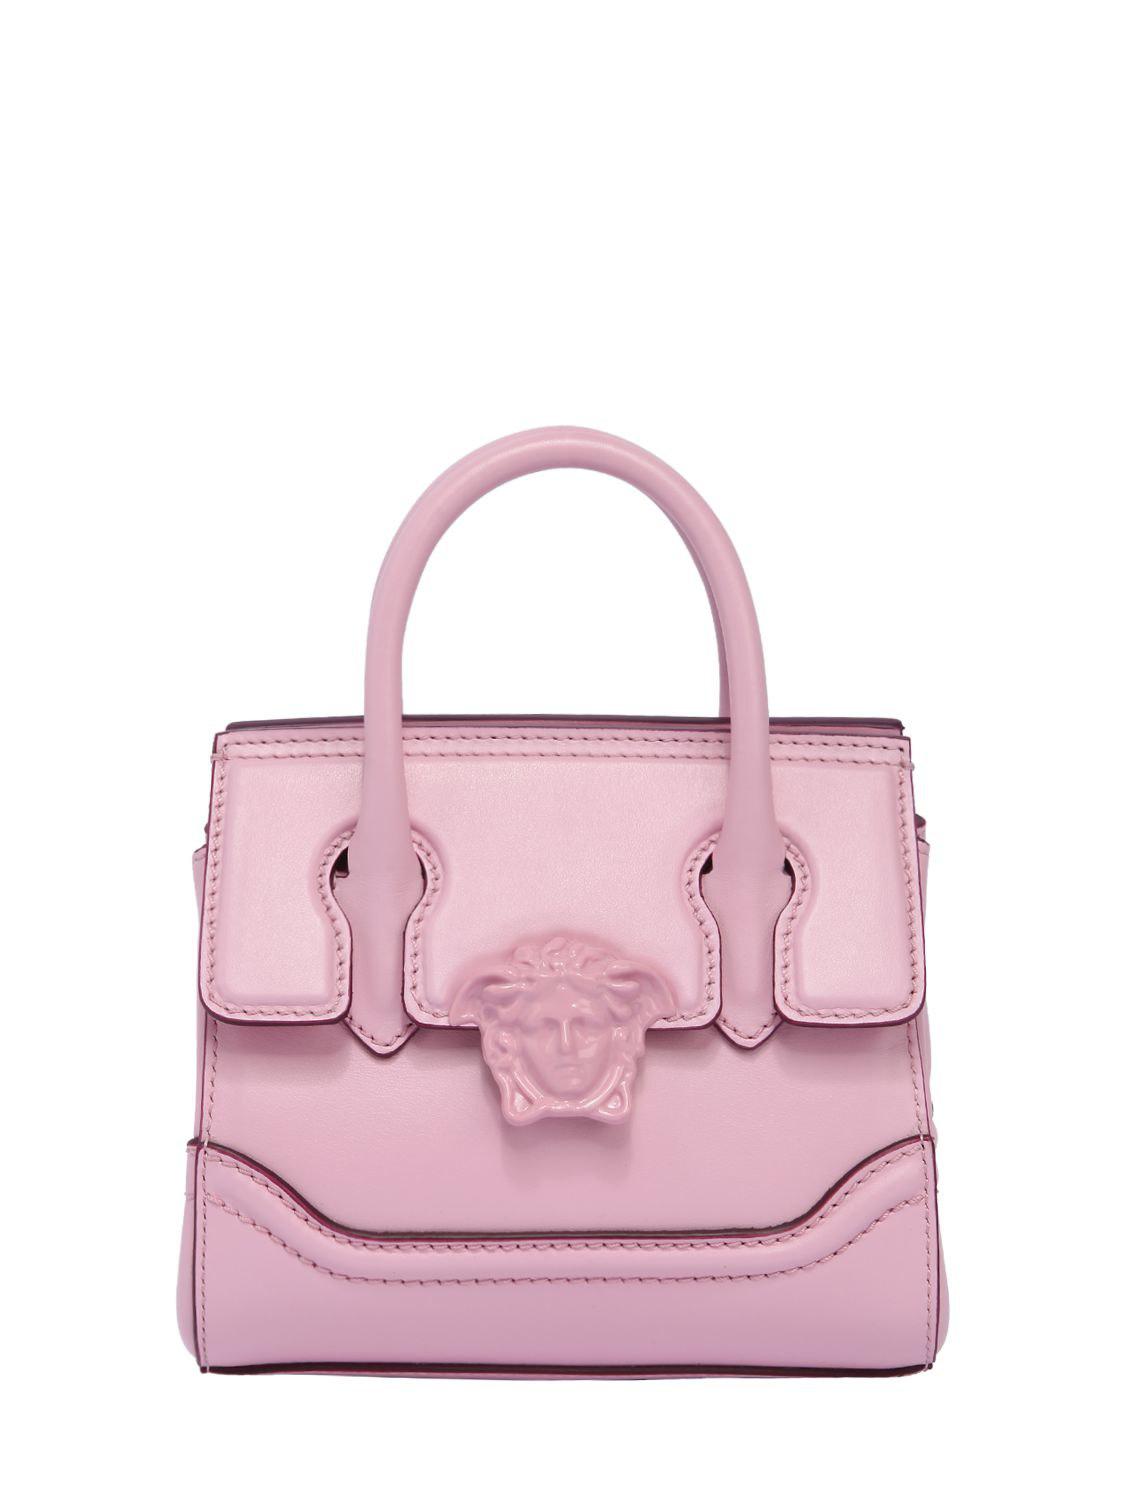 ينزعج تآكل الغطاء النباتي versace bag pink - robscottdesign.com